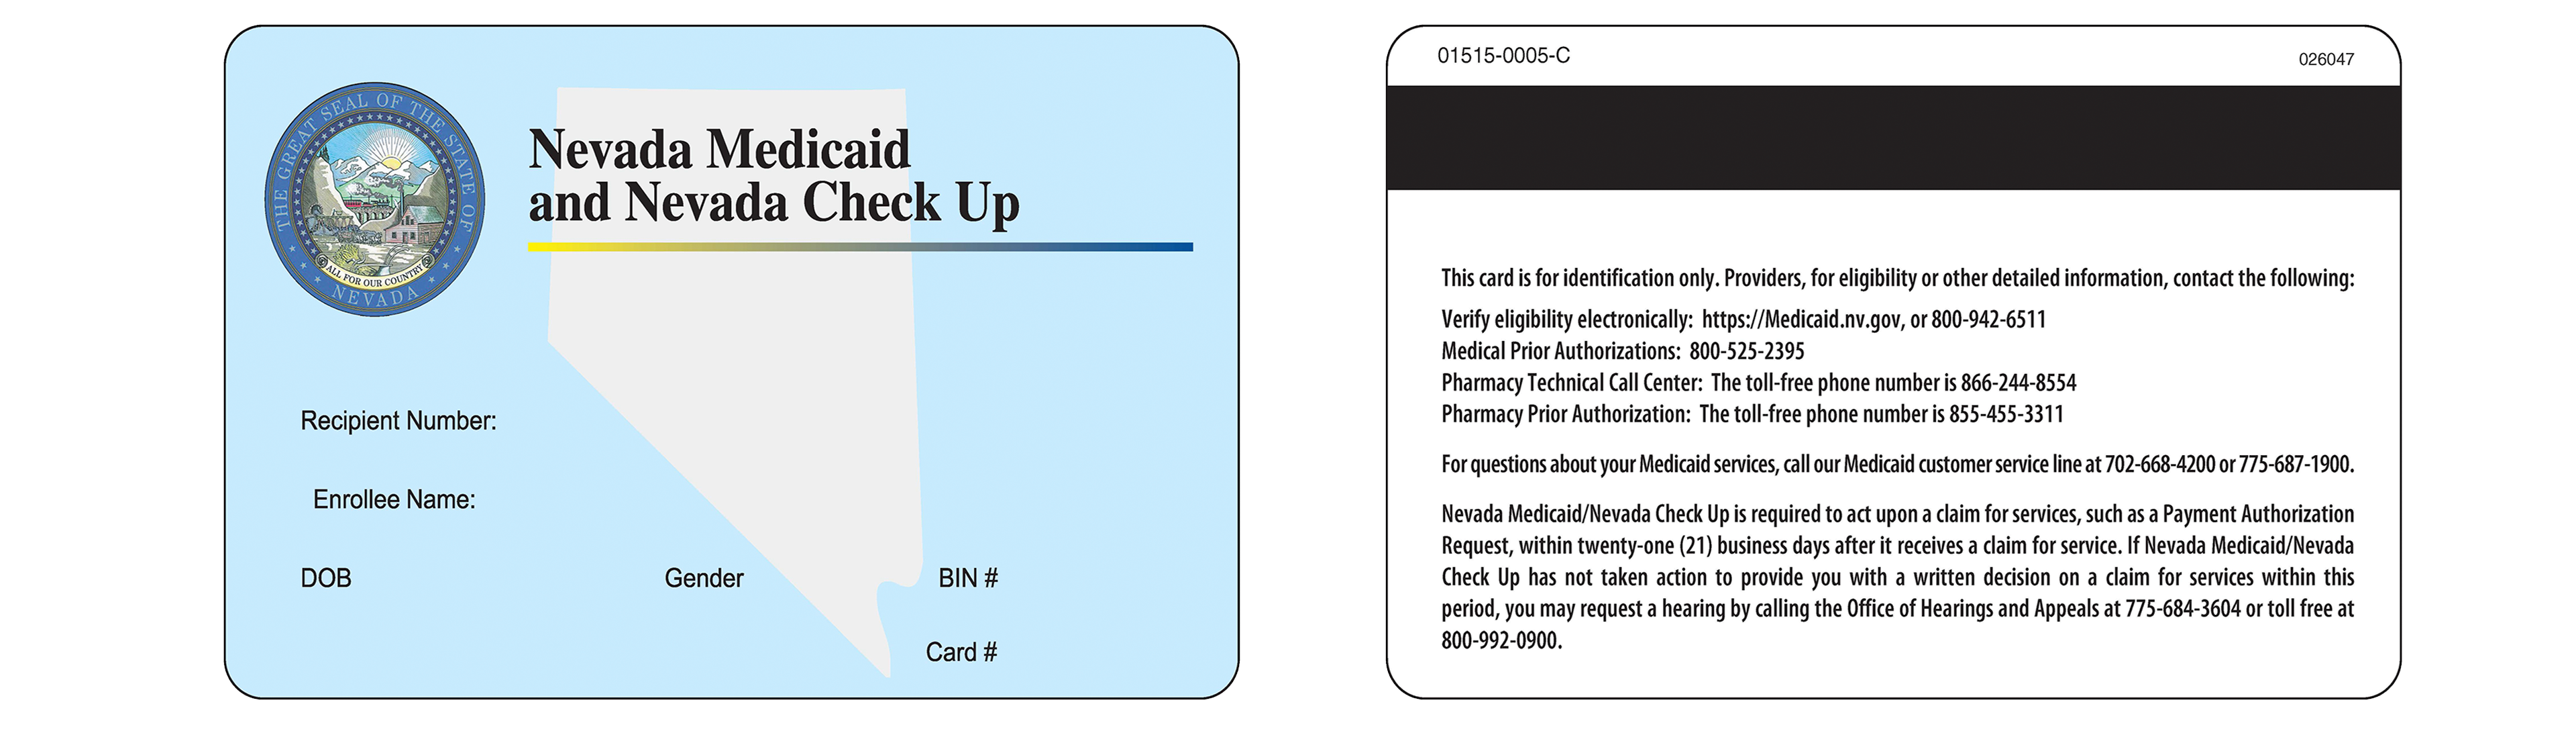 Ejemplo de la tarjeta de identificación estatal de Medicaid